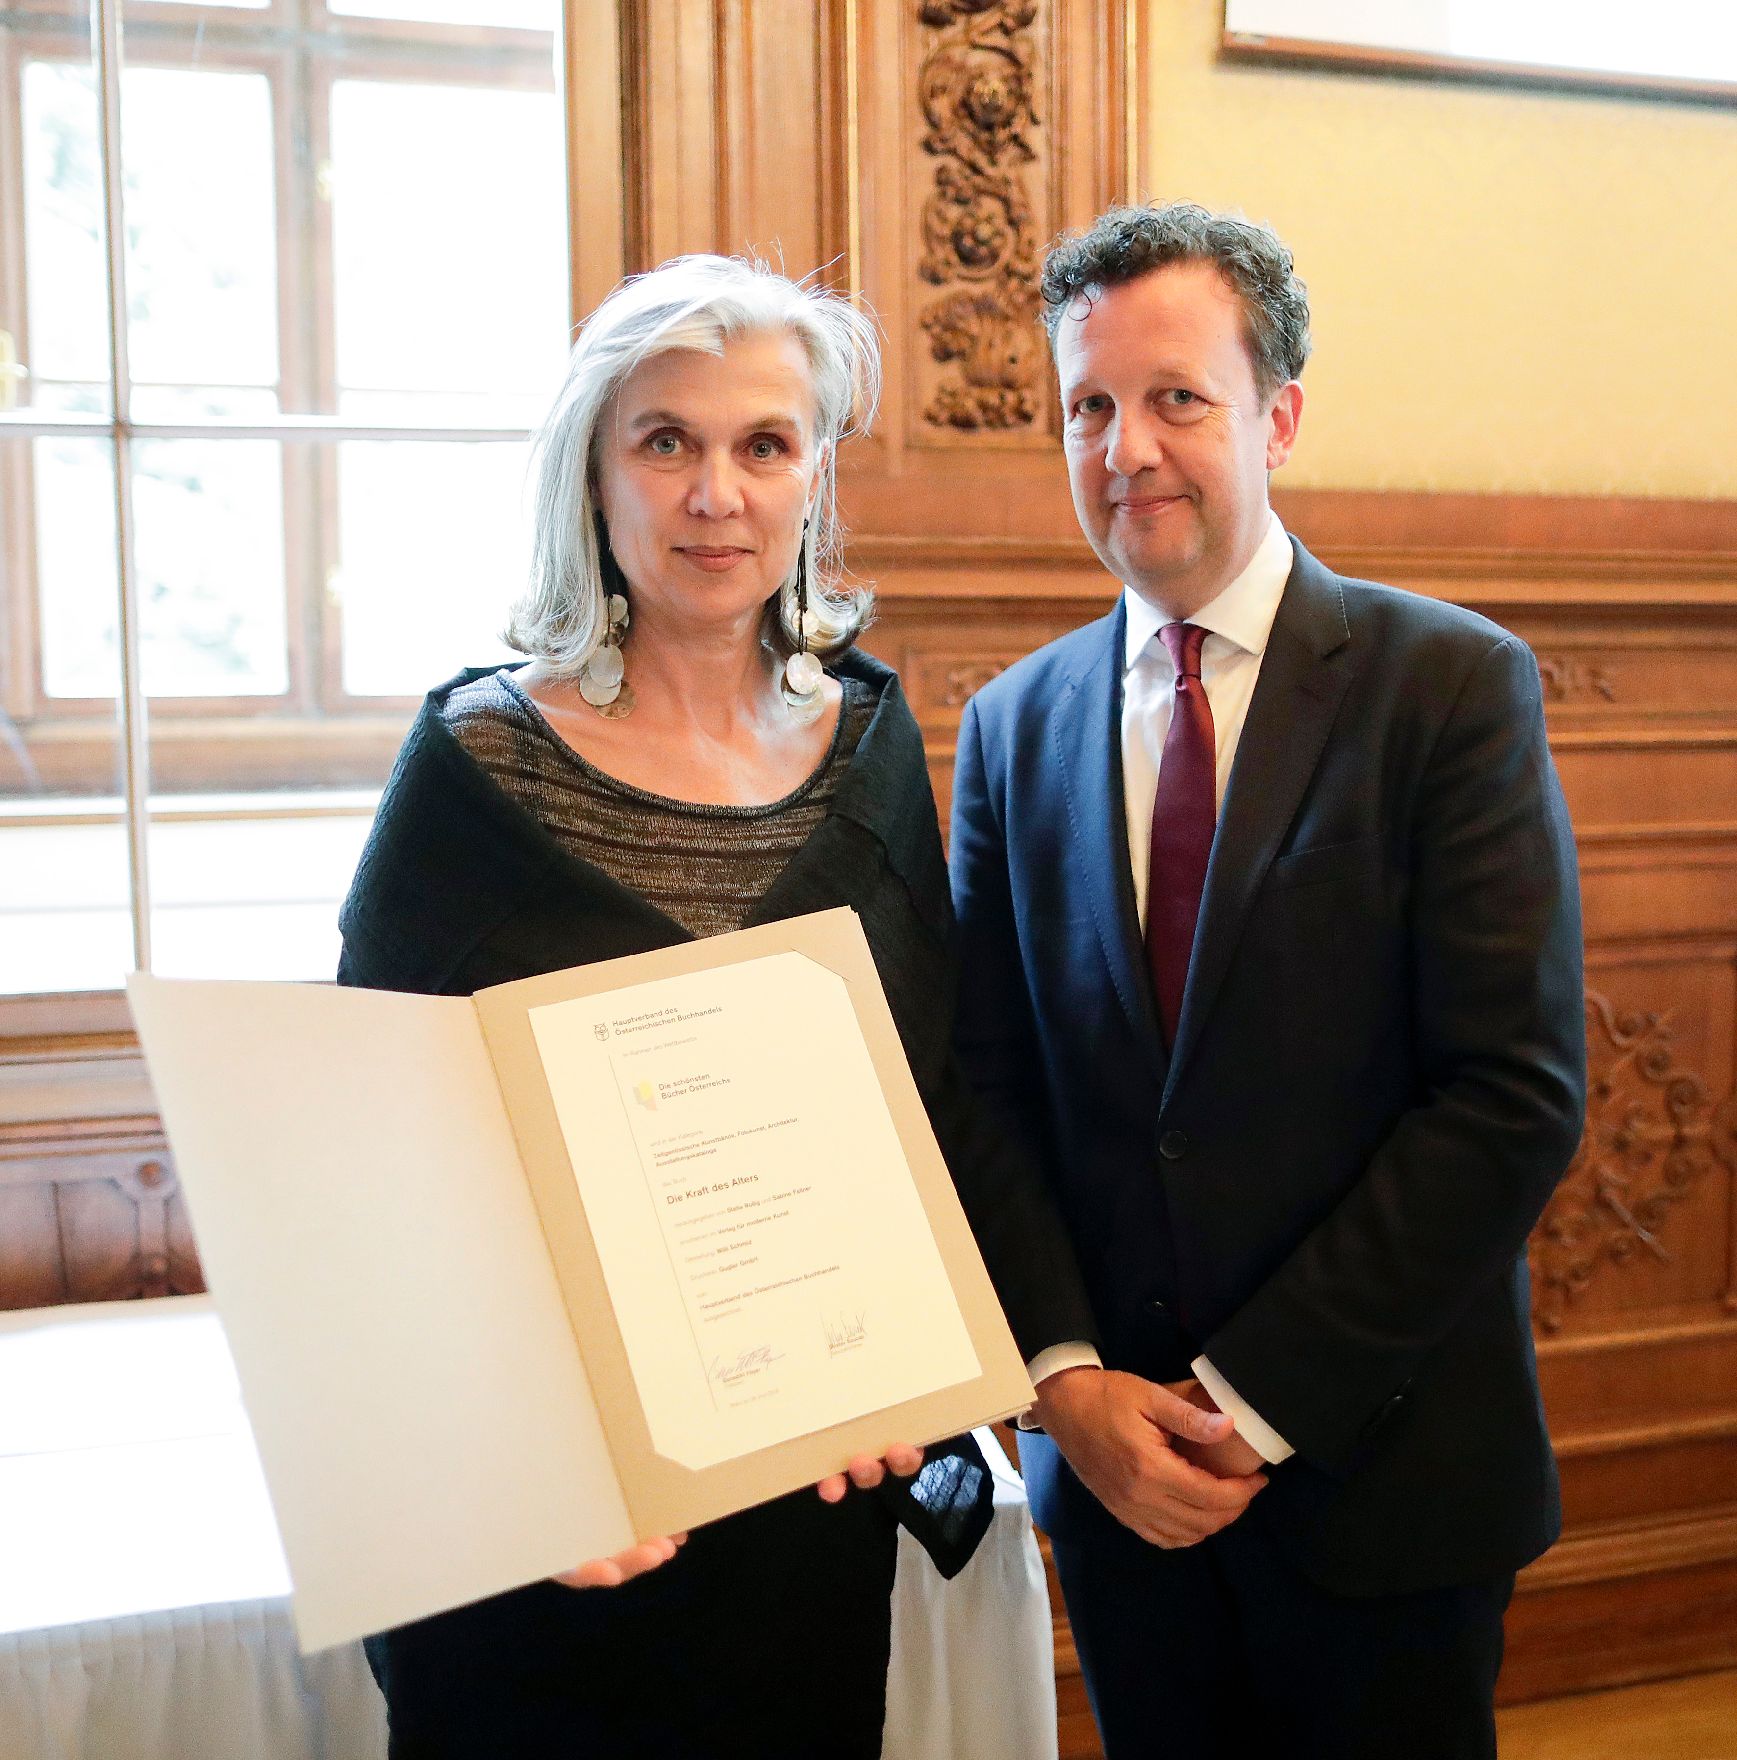 Am 26. Juni 2018 fand die Staatspreisverleihung für die "Schönsten Bücher Österreichs" statt.